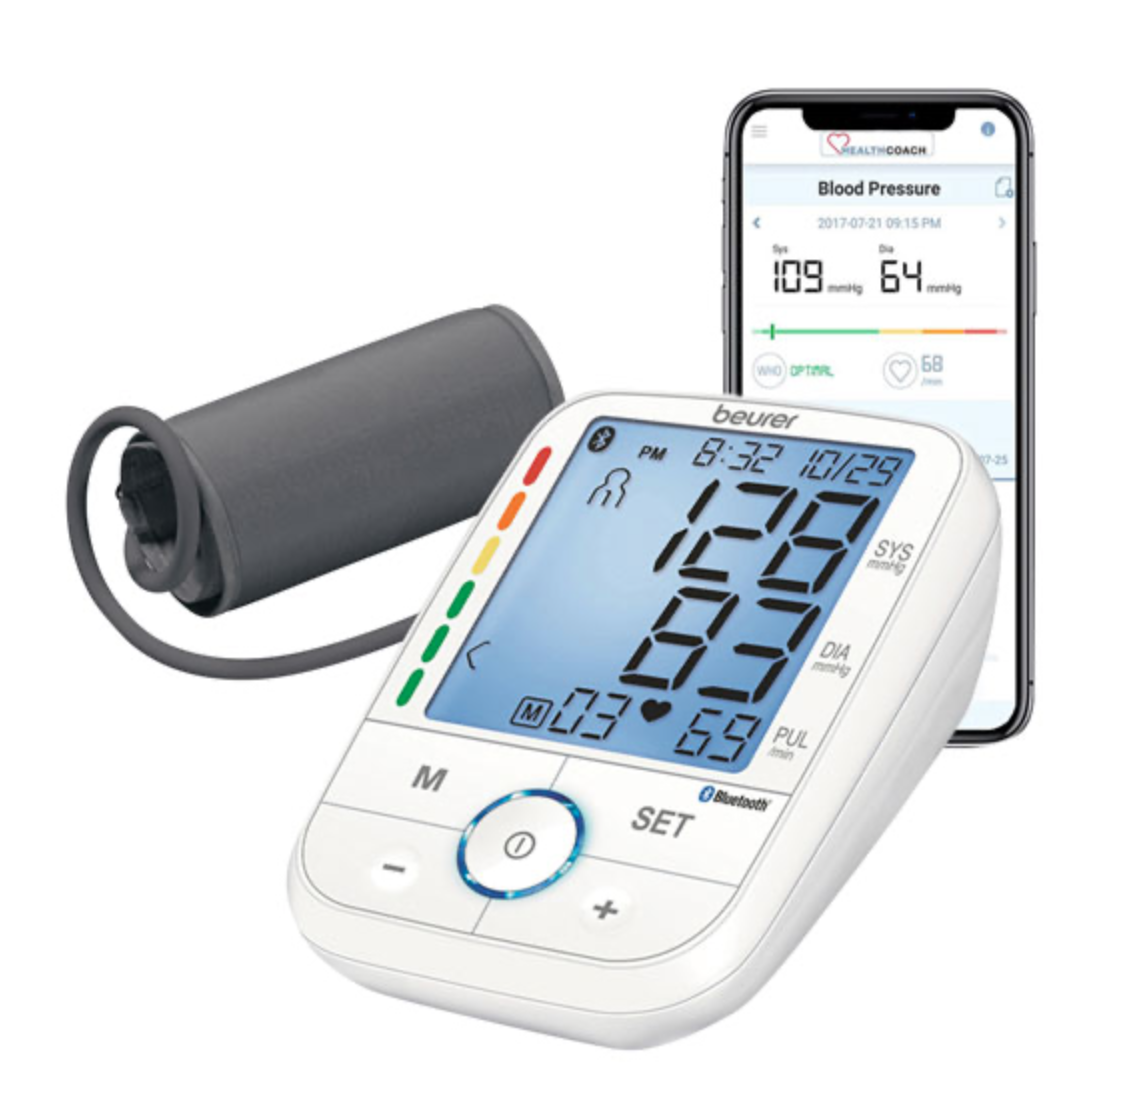 Beurer blood pressure monitor